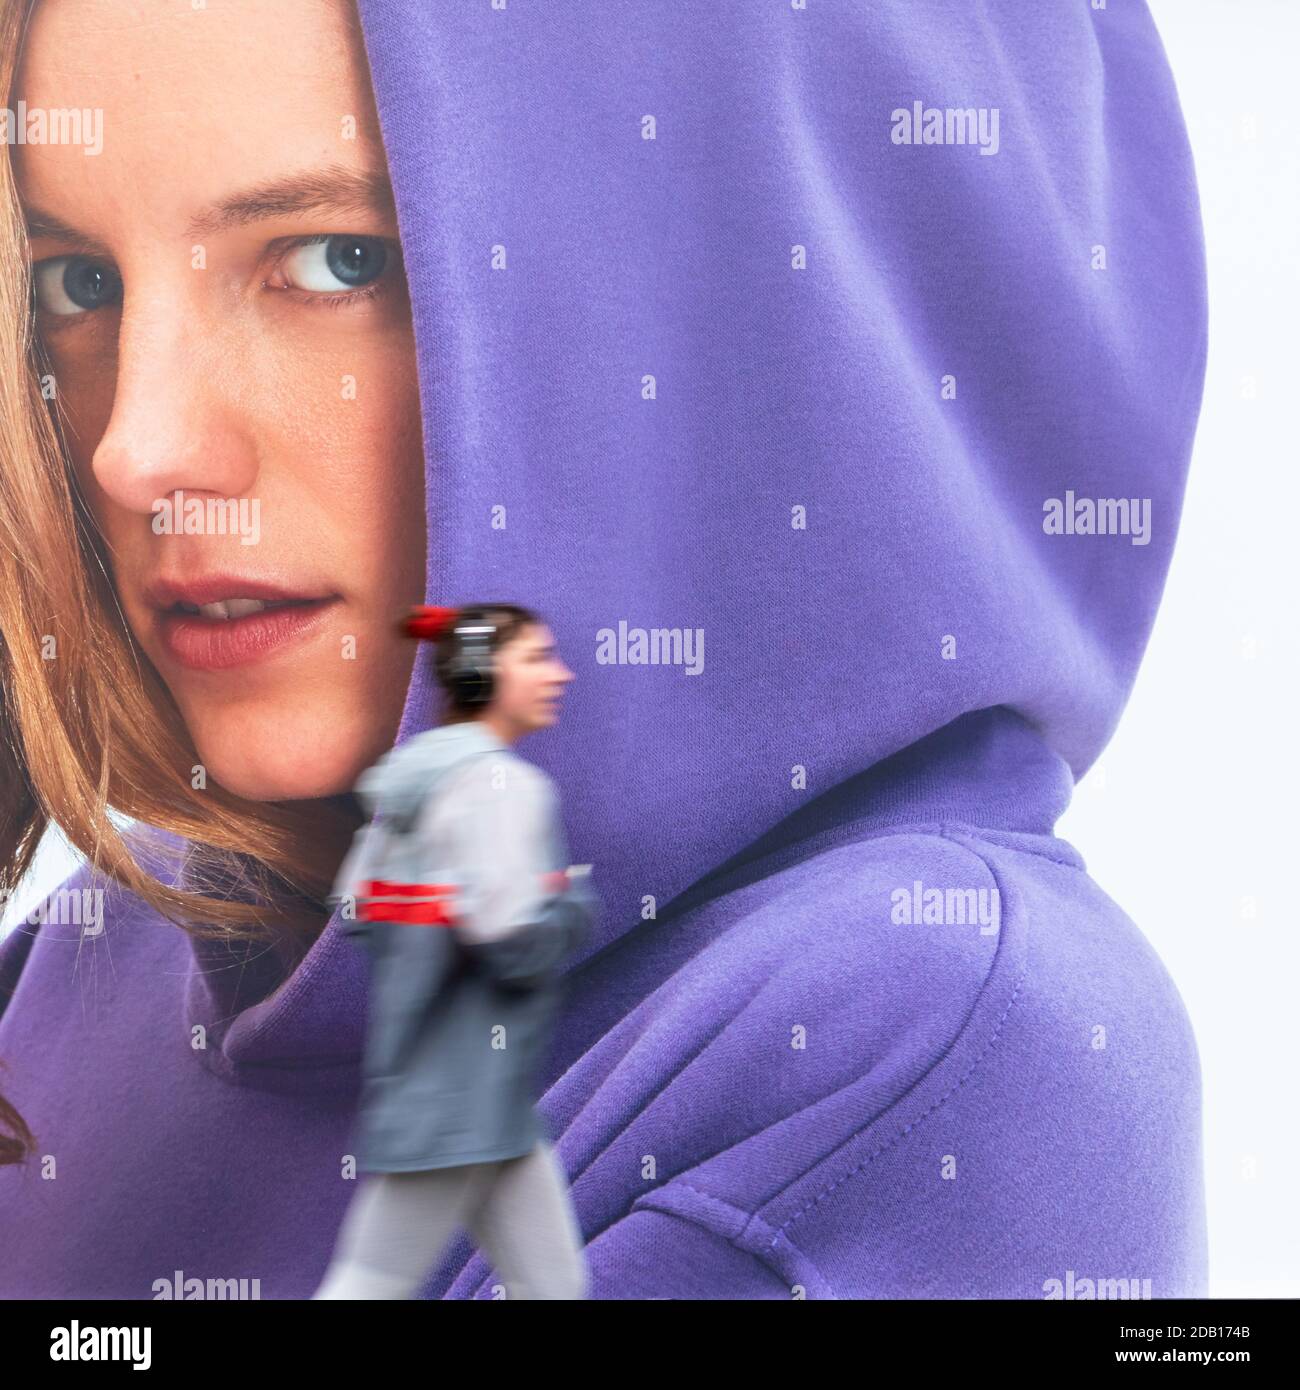 Una donna con le cuffie che passa accanto a Shaftesbury Avenue, londra, regno unito Foto Stock